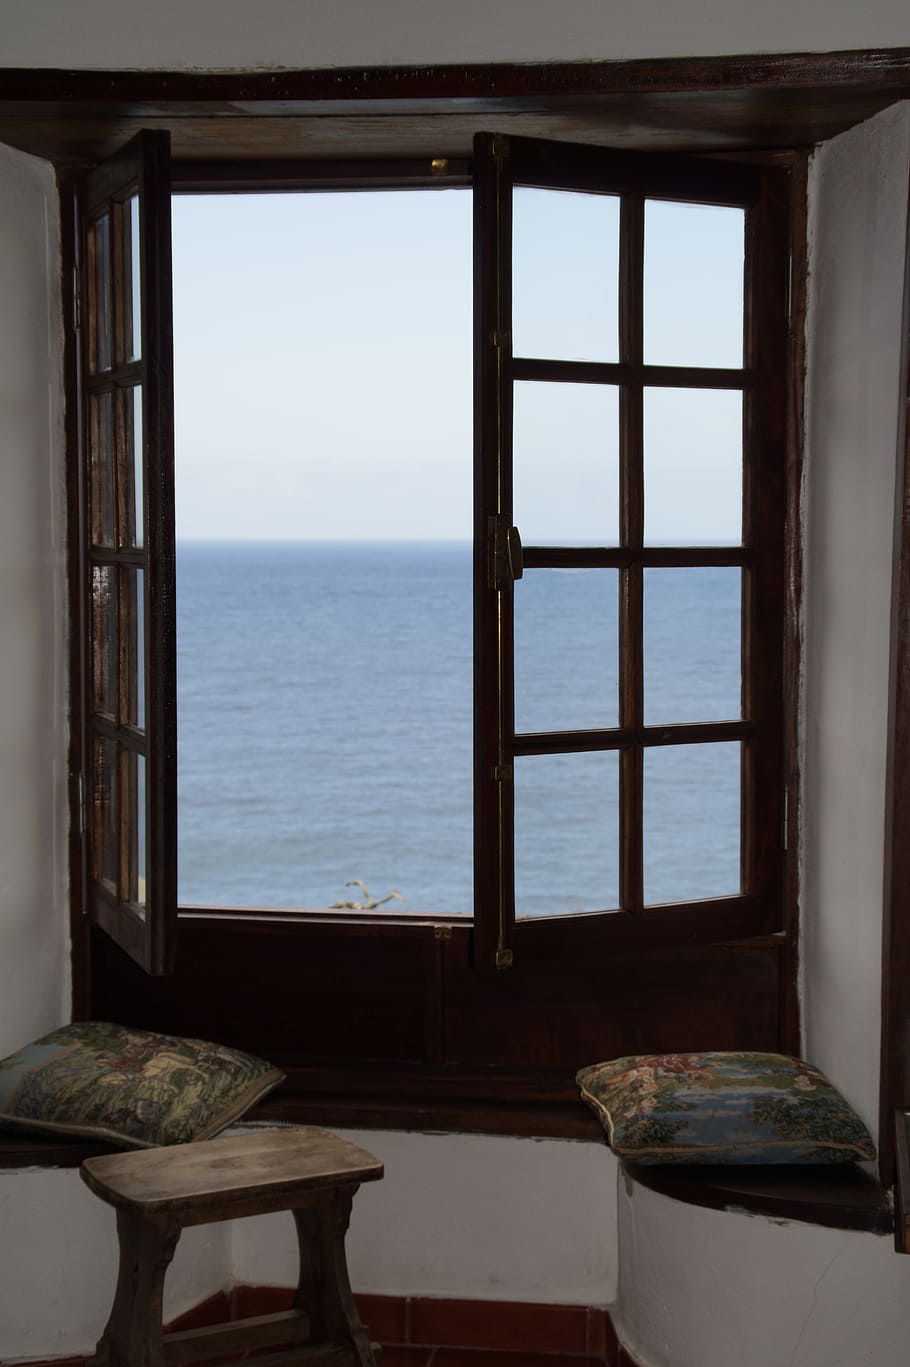 Jendela, Pemandangan, Laut, Atlantik, jendela dengan pemandangan, rumah liburan, liburan, istirahat, pemulihan, bunyi laut